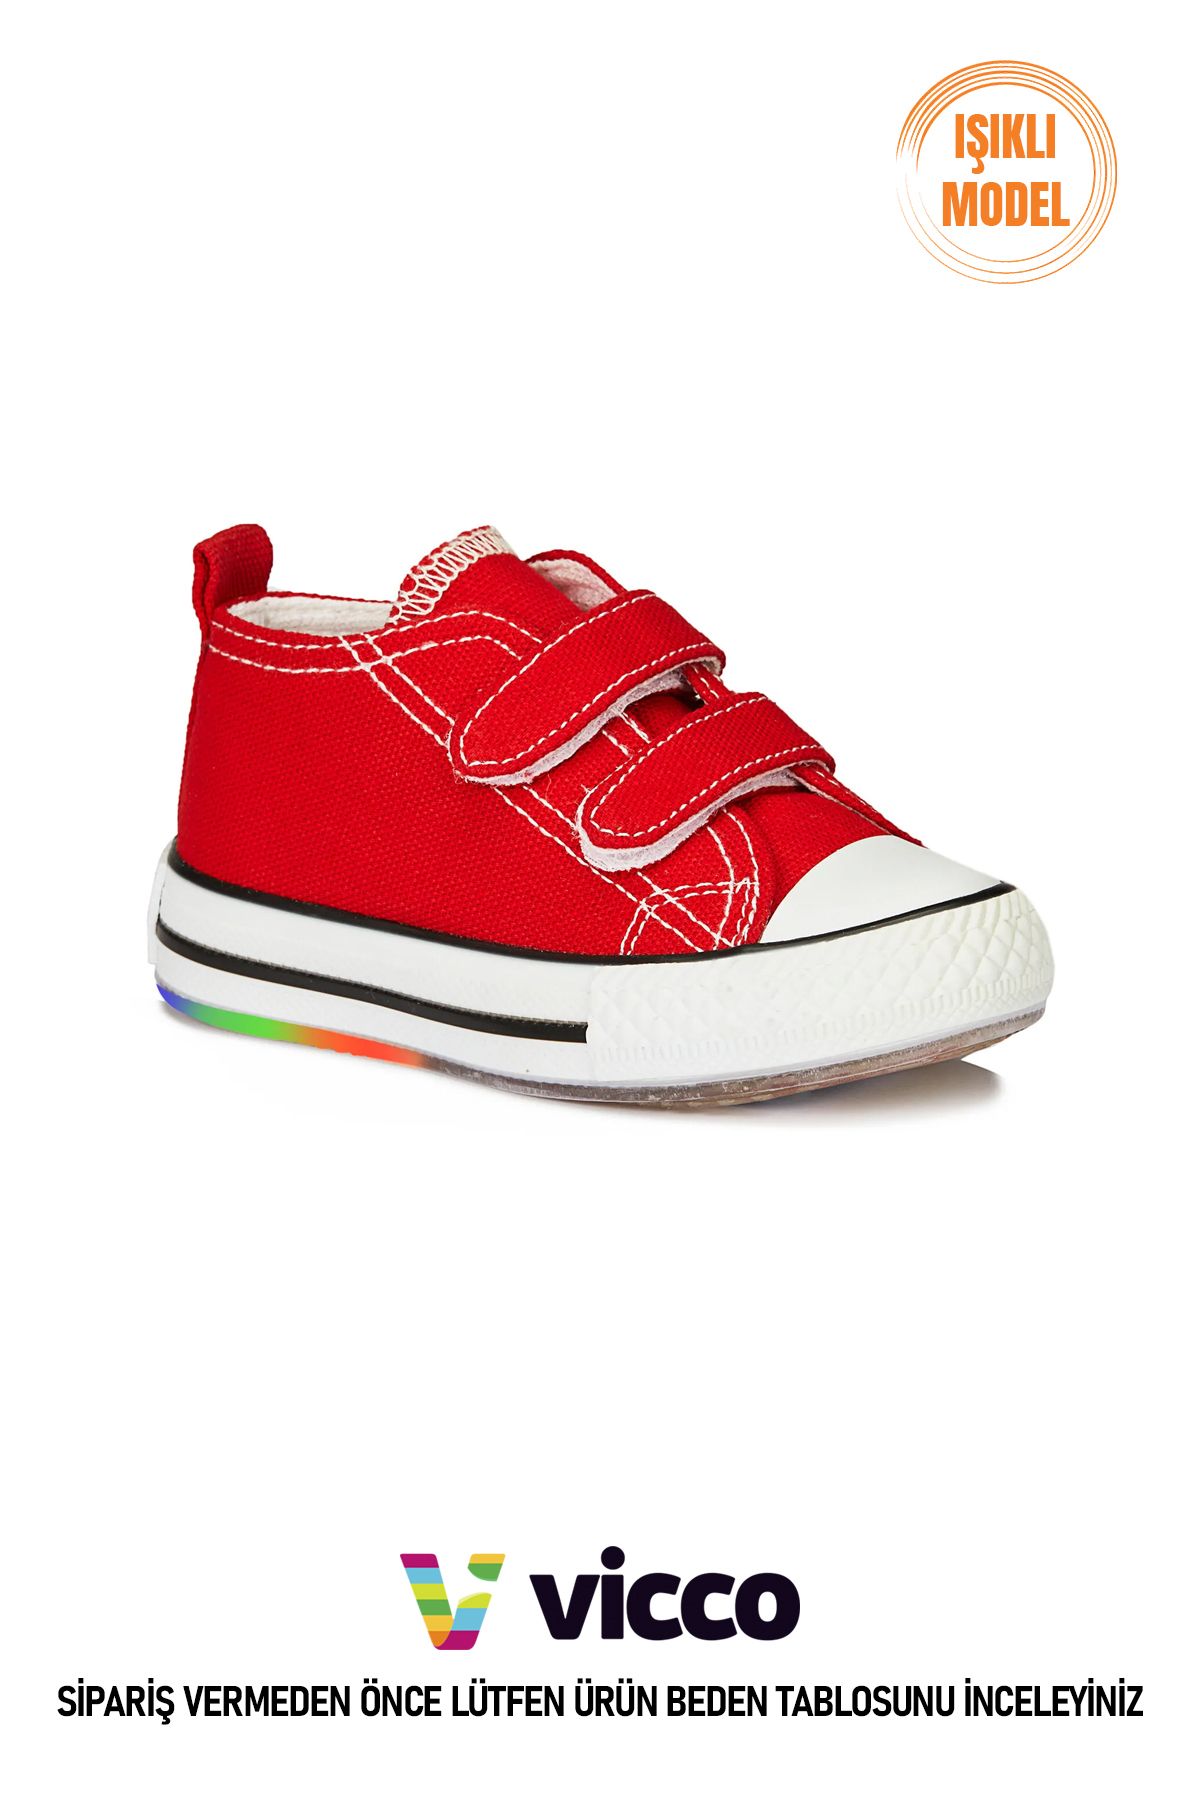 Vicco Pino Model Işıklı Unisex Bebek ve Çocuk Kırmızı Spor Ayakkabı